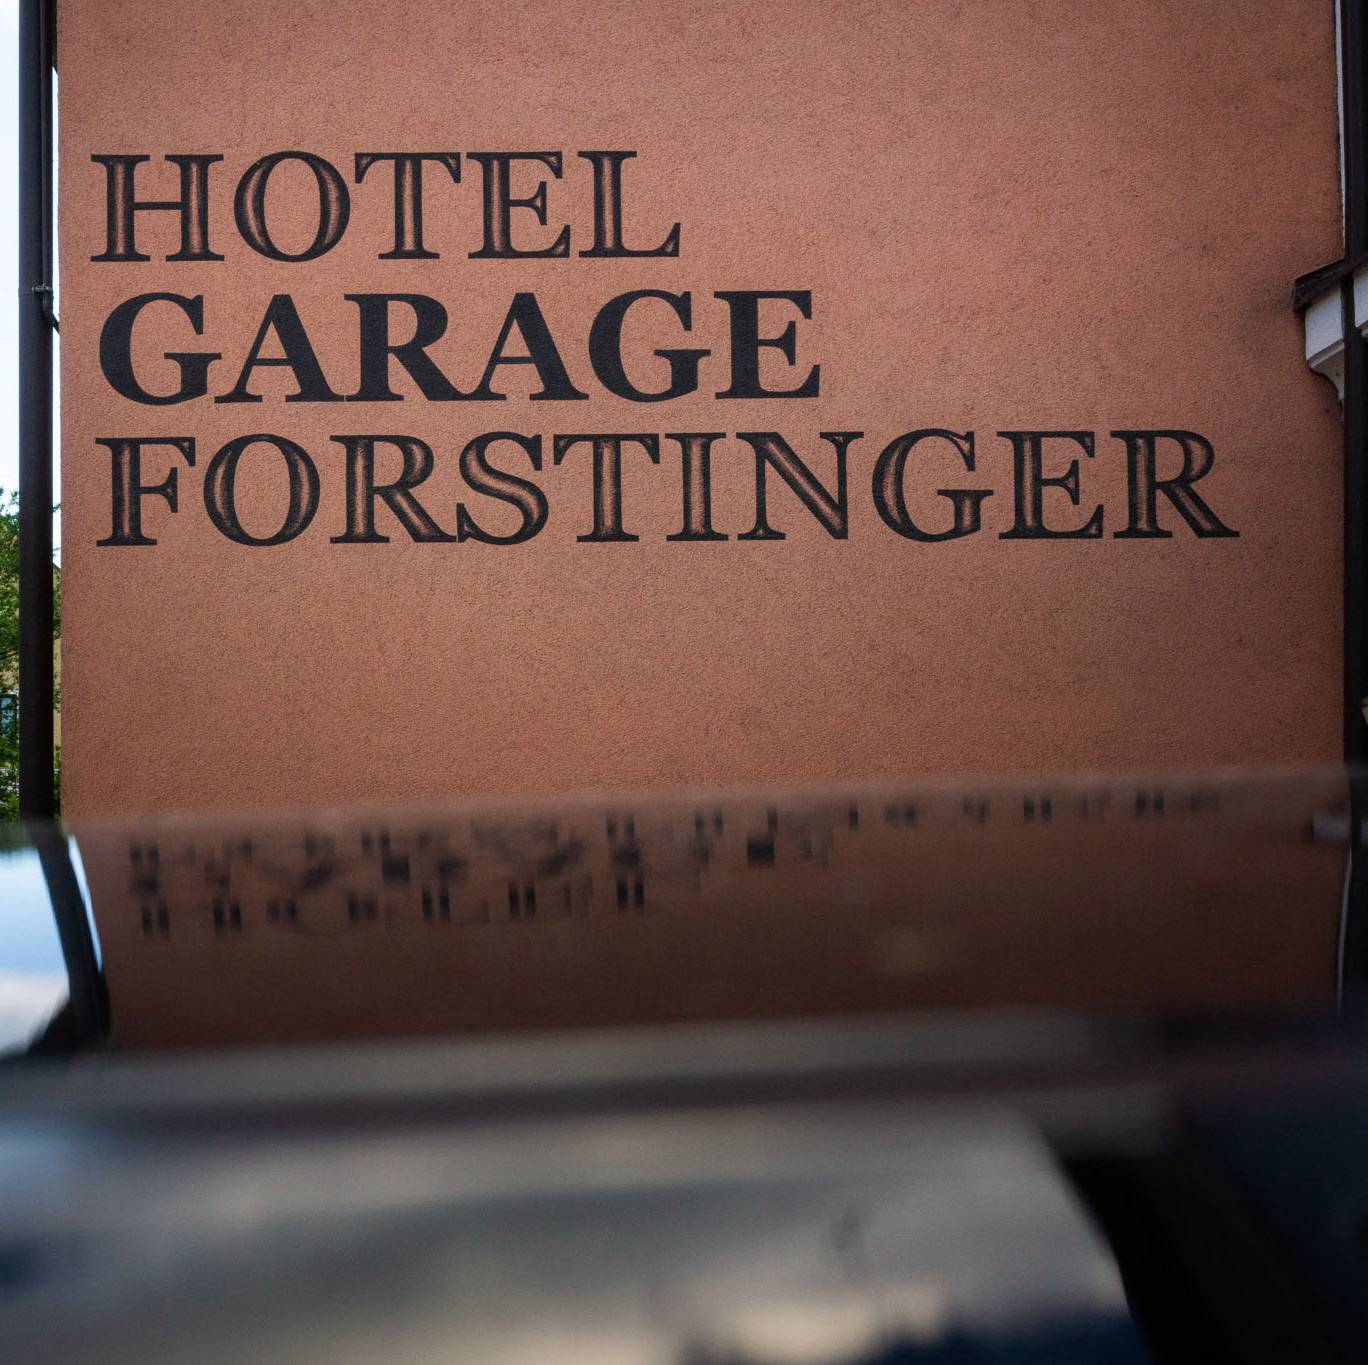 Hotel Forstinger garage